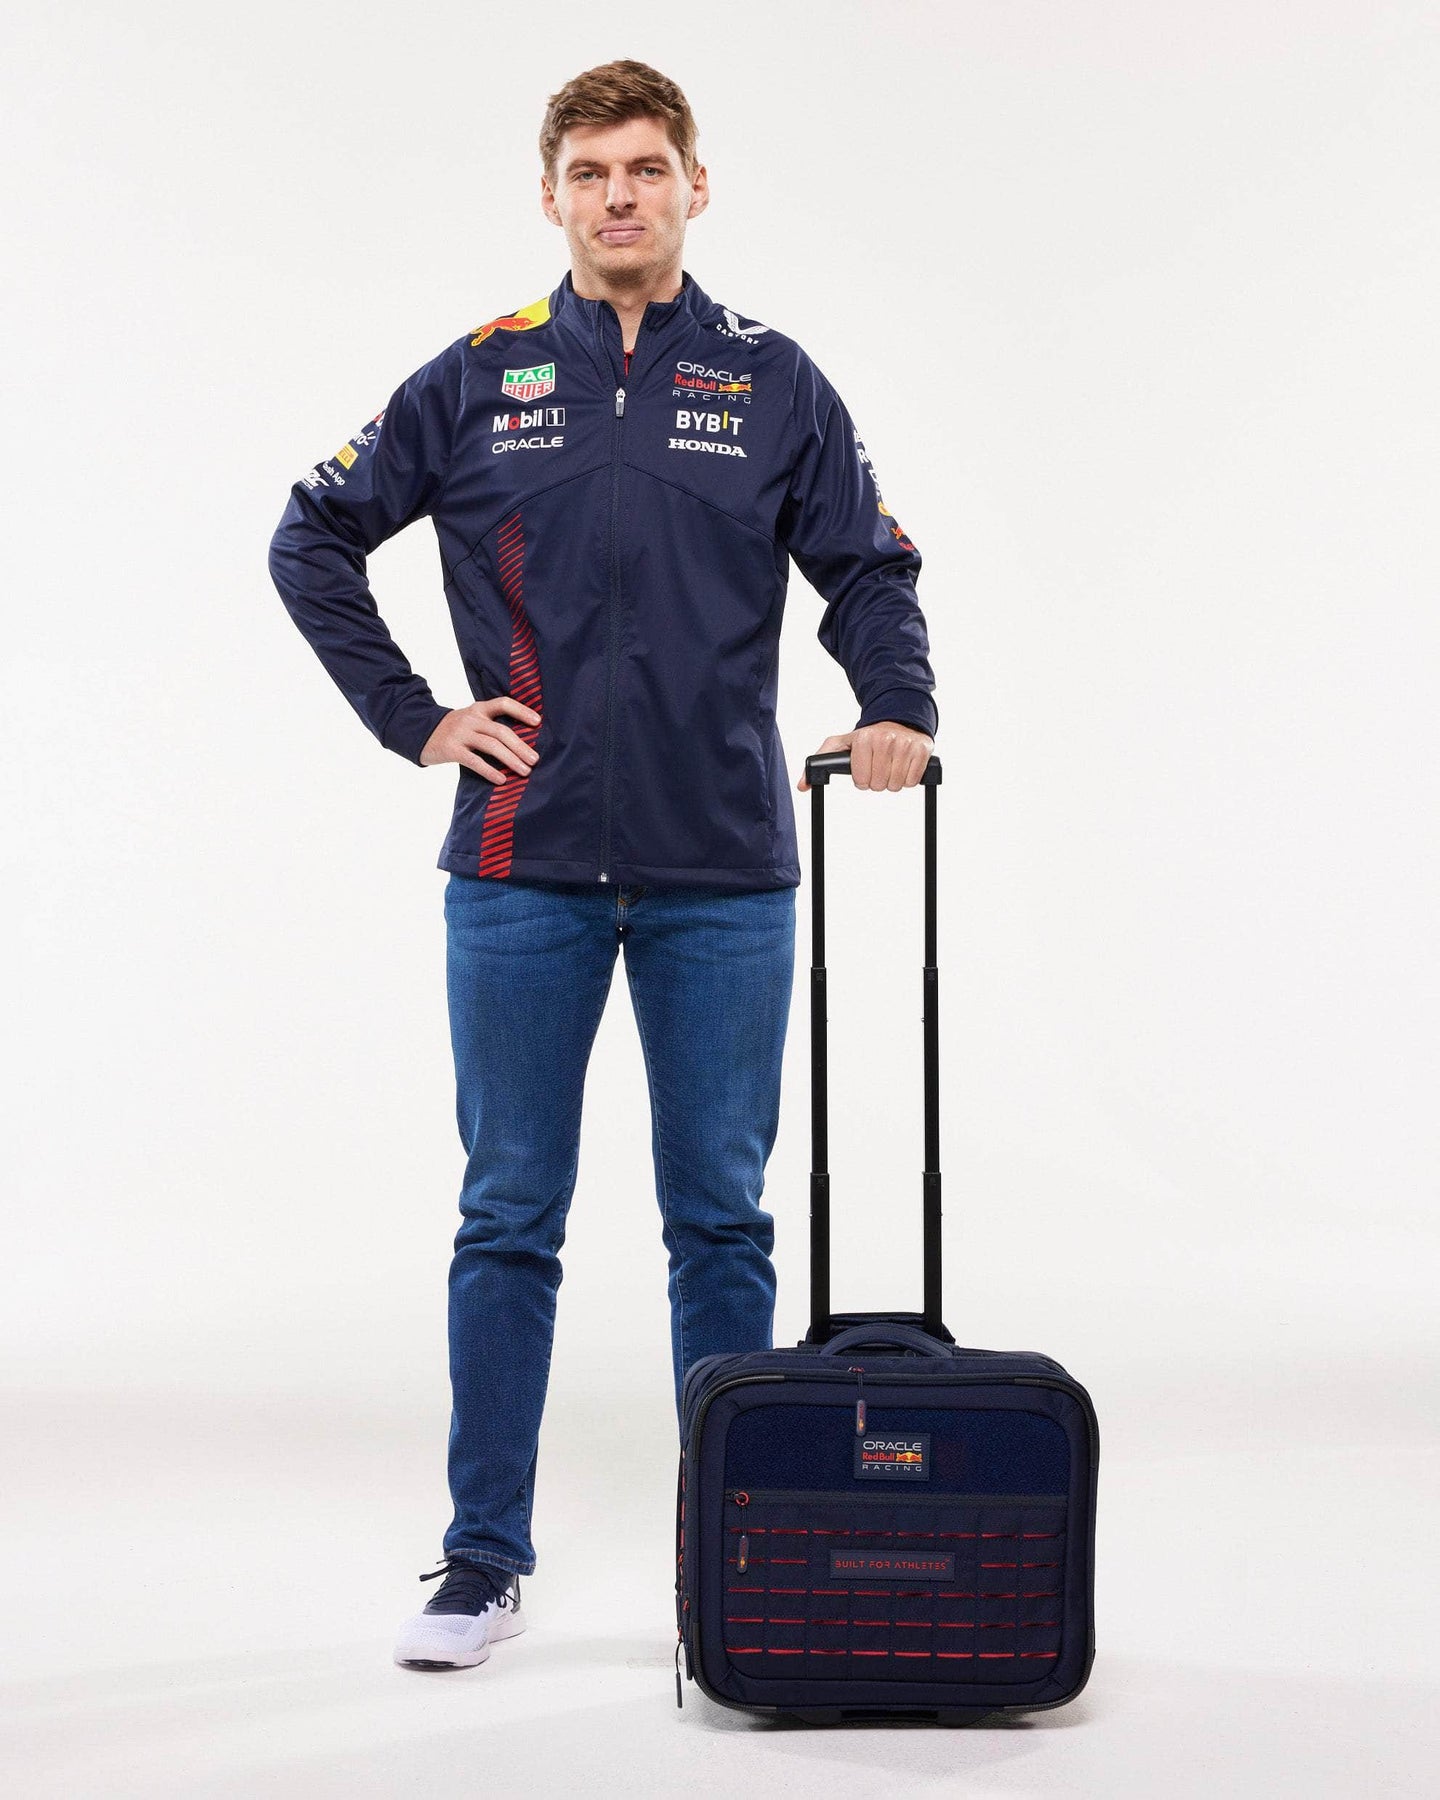 Red Bull bagagetas/stuur